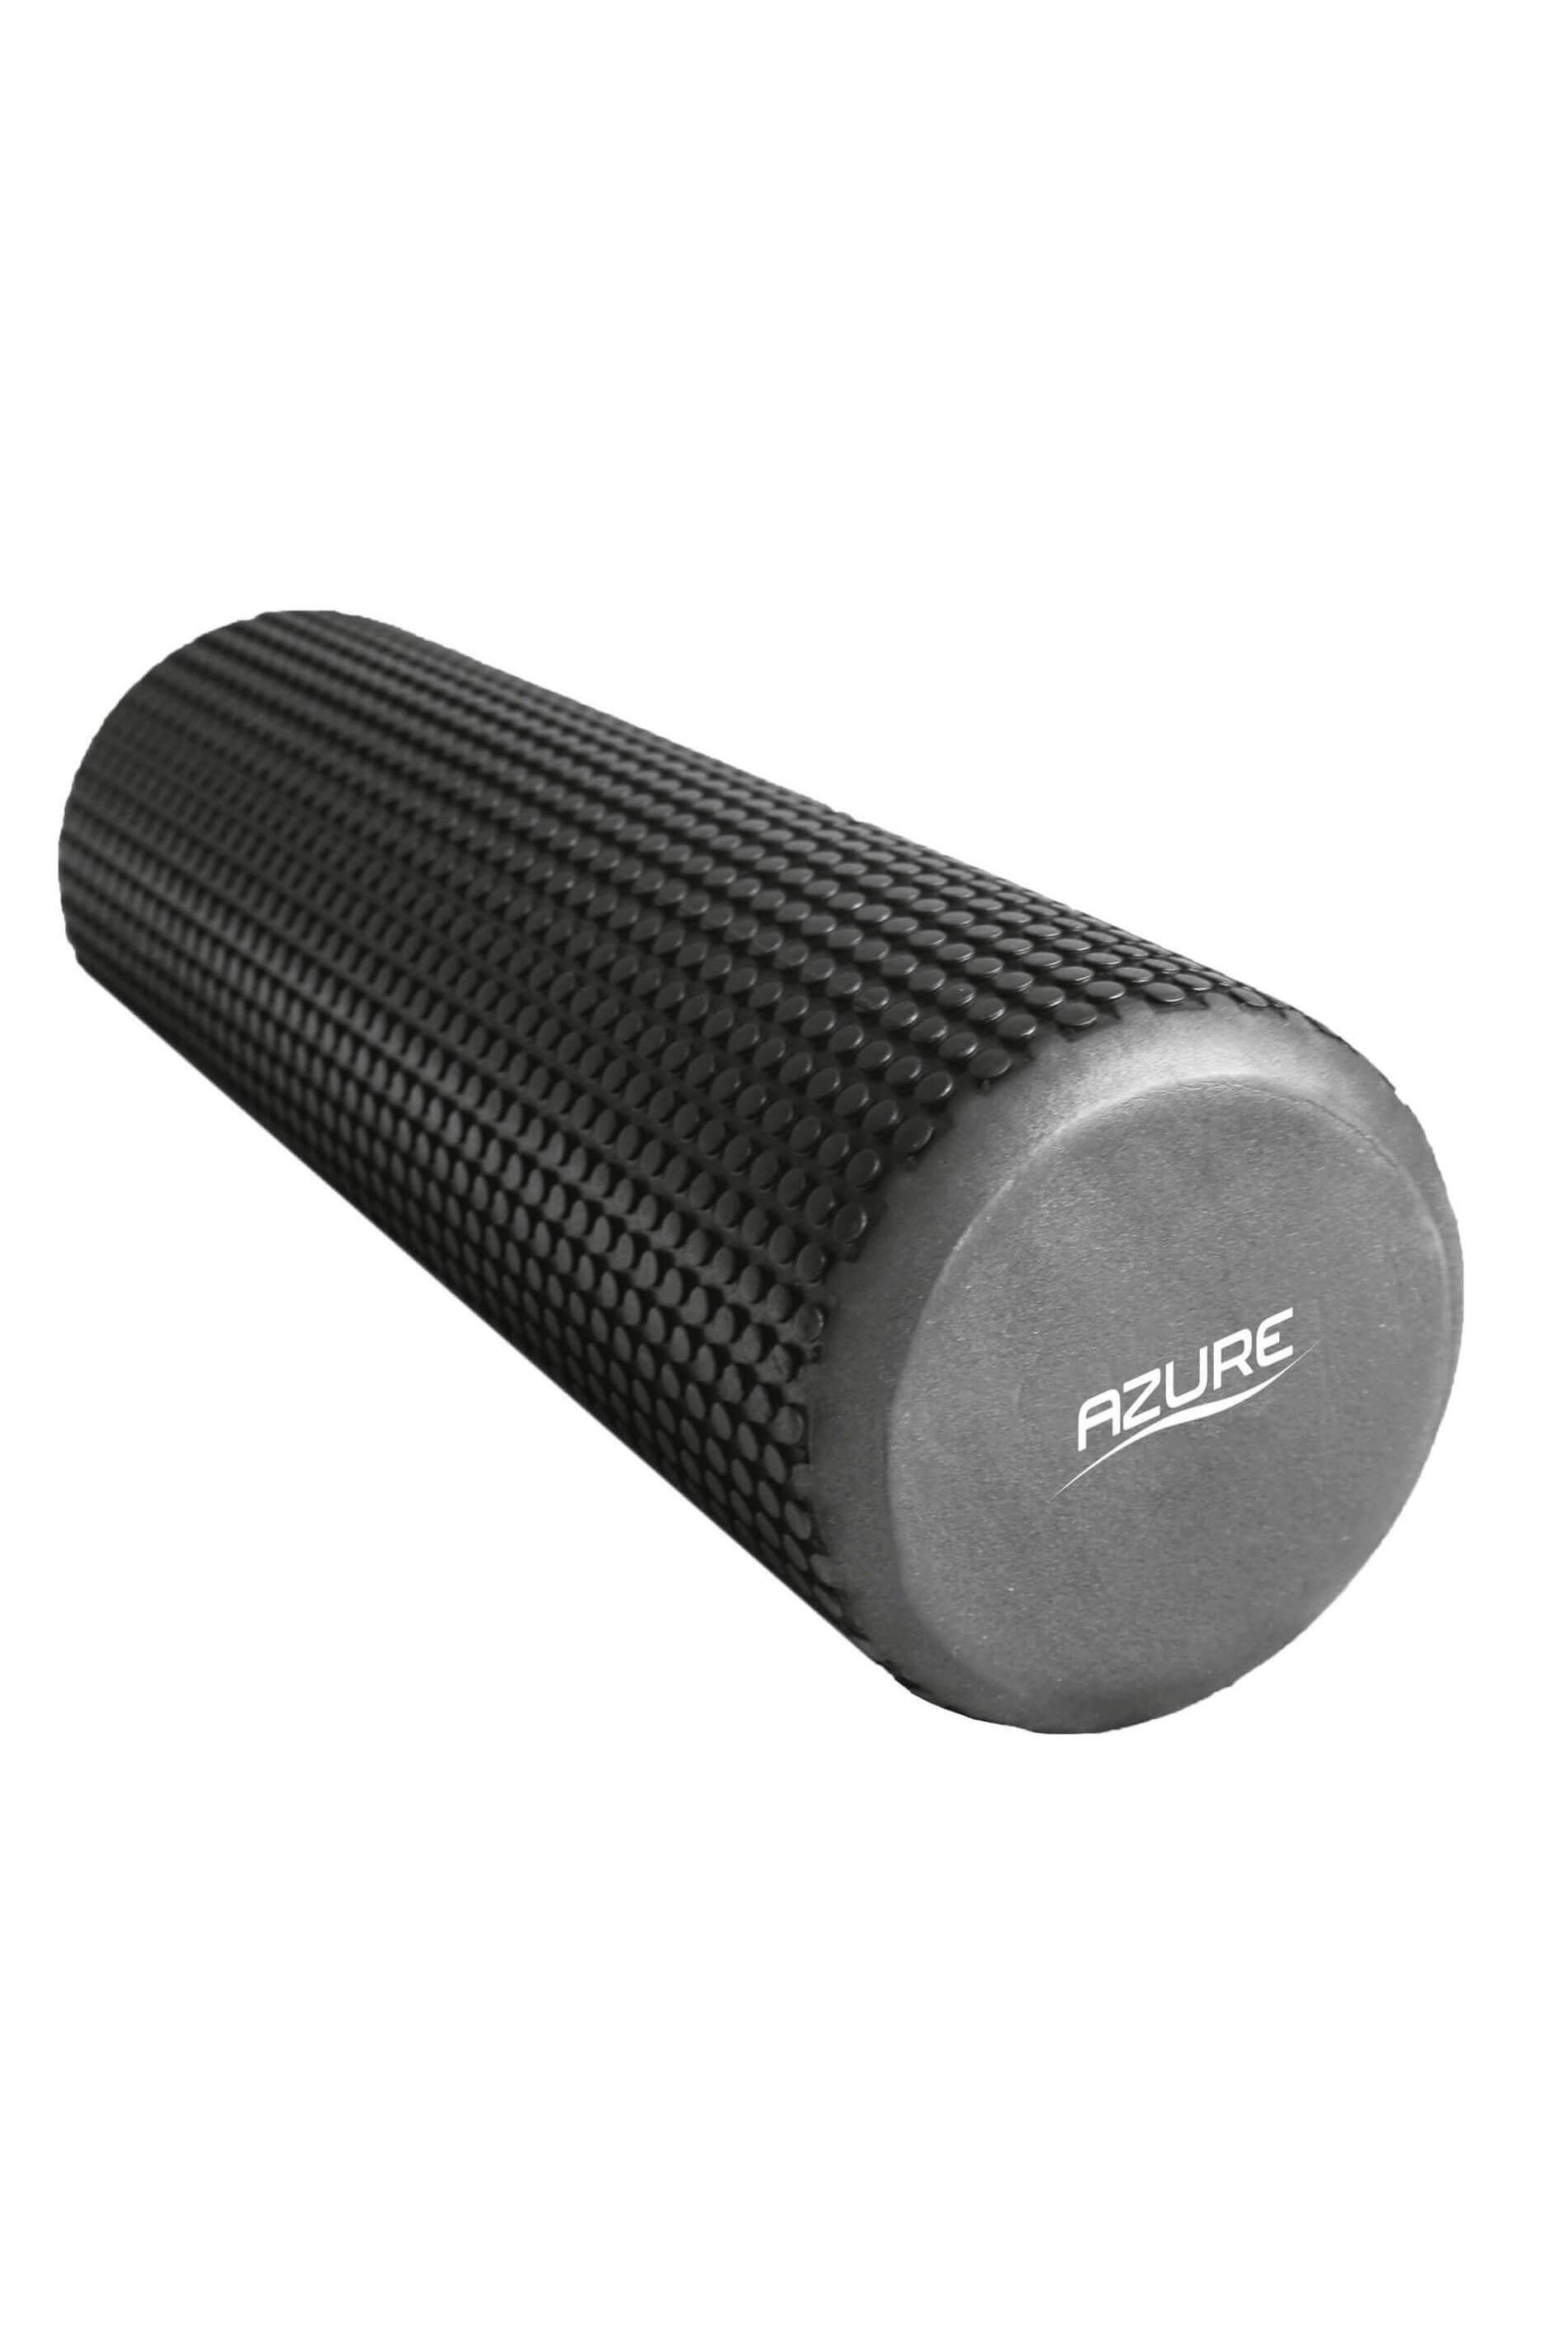 Azure Muscle Massage Foam Roller|black